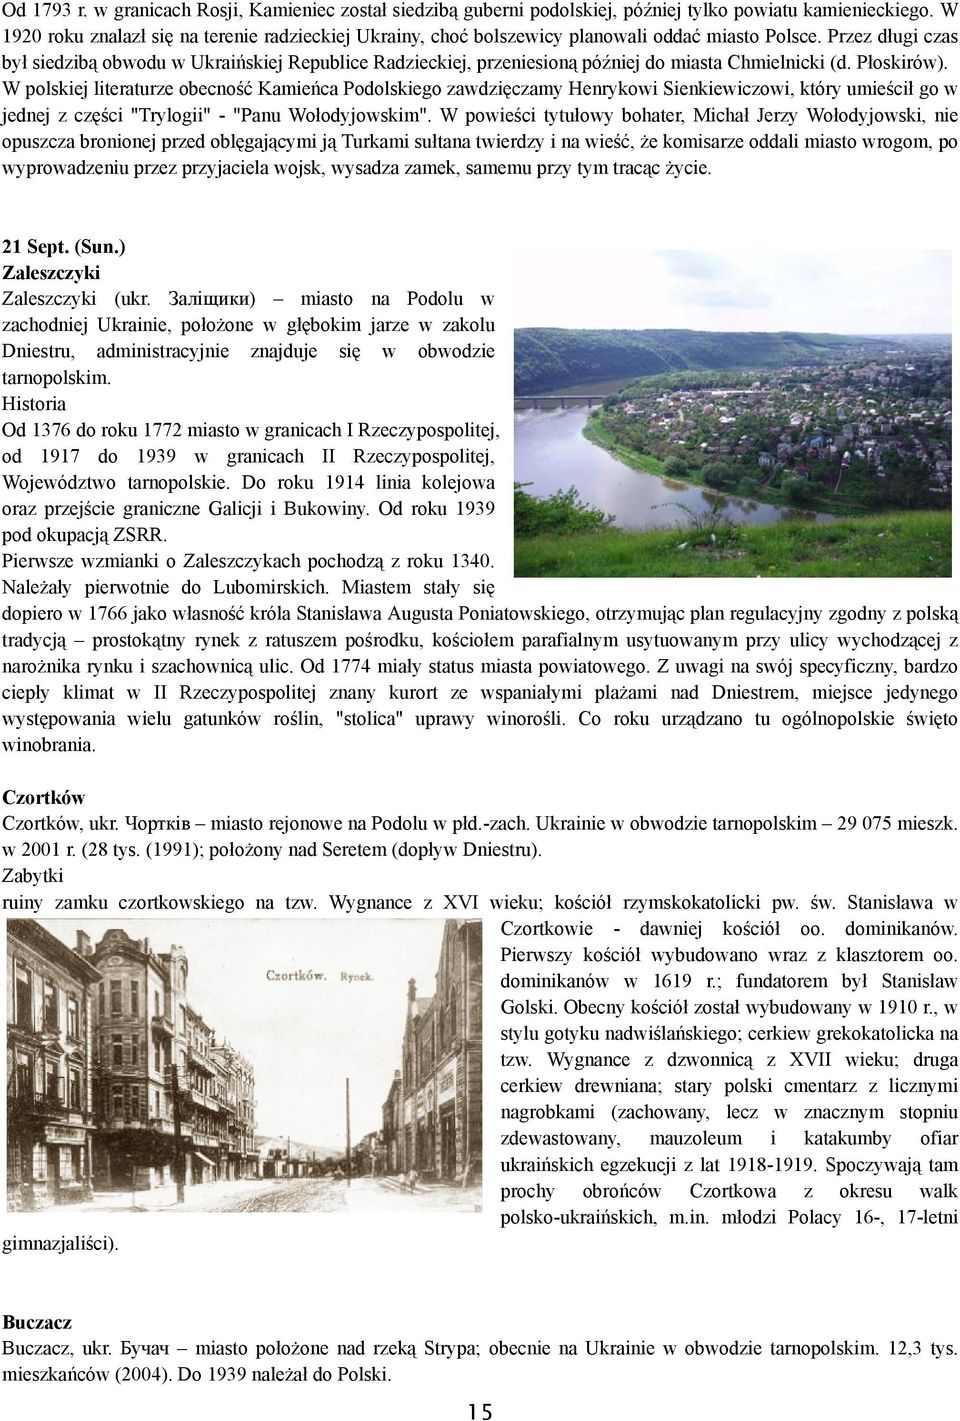 Przez długi czas był siedzibą obwodu w Ukraińskiej Republice Radzieckiej, przeniesioną później do miasta Chmielnicki (d. Płoskirów).